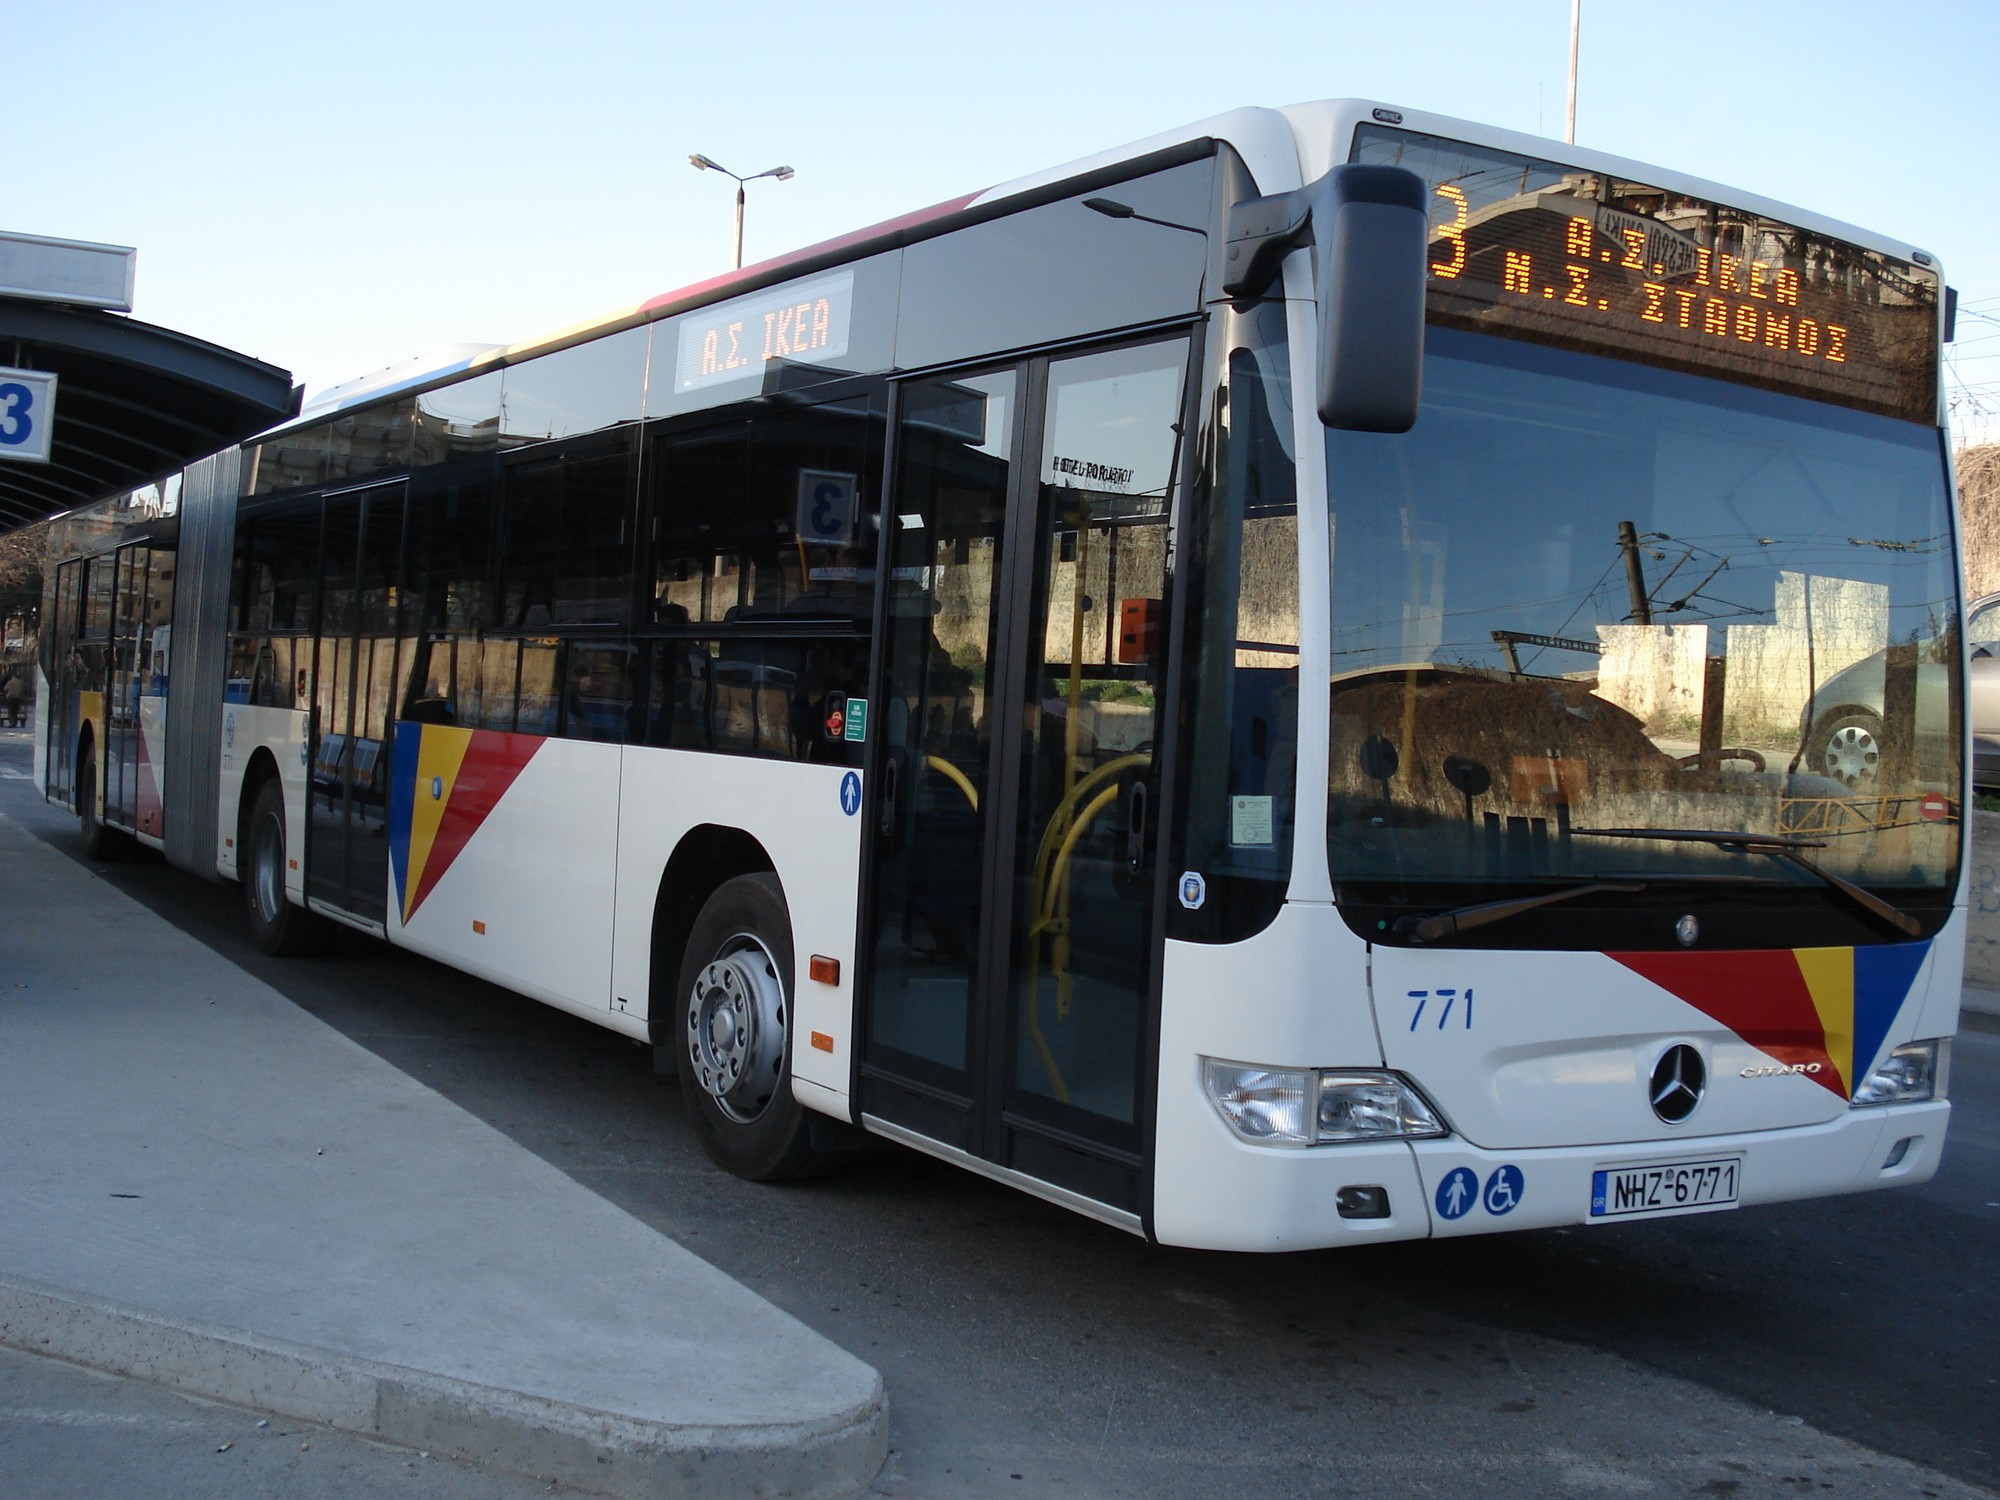 Θεσσαλονίκη: Χτυπούσαν και λήστευαν πολίτες μέσα σε λεωφορεία – Δυο συλλήψεις